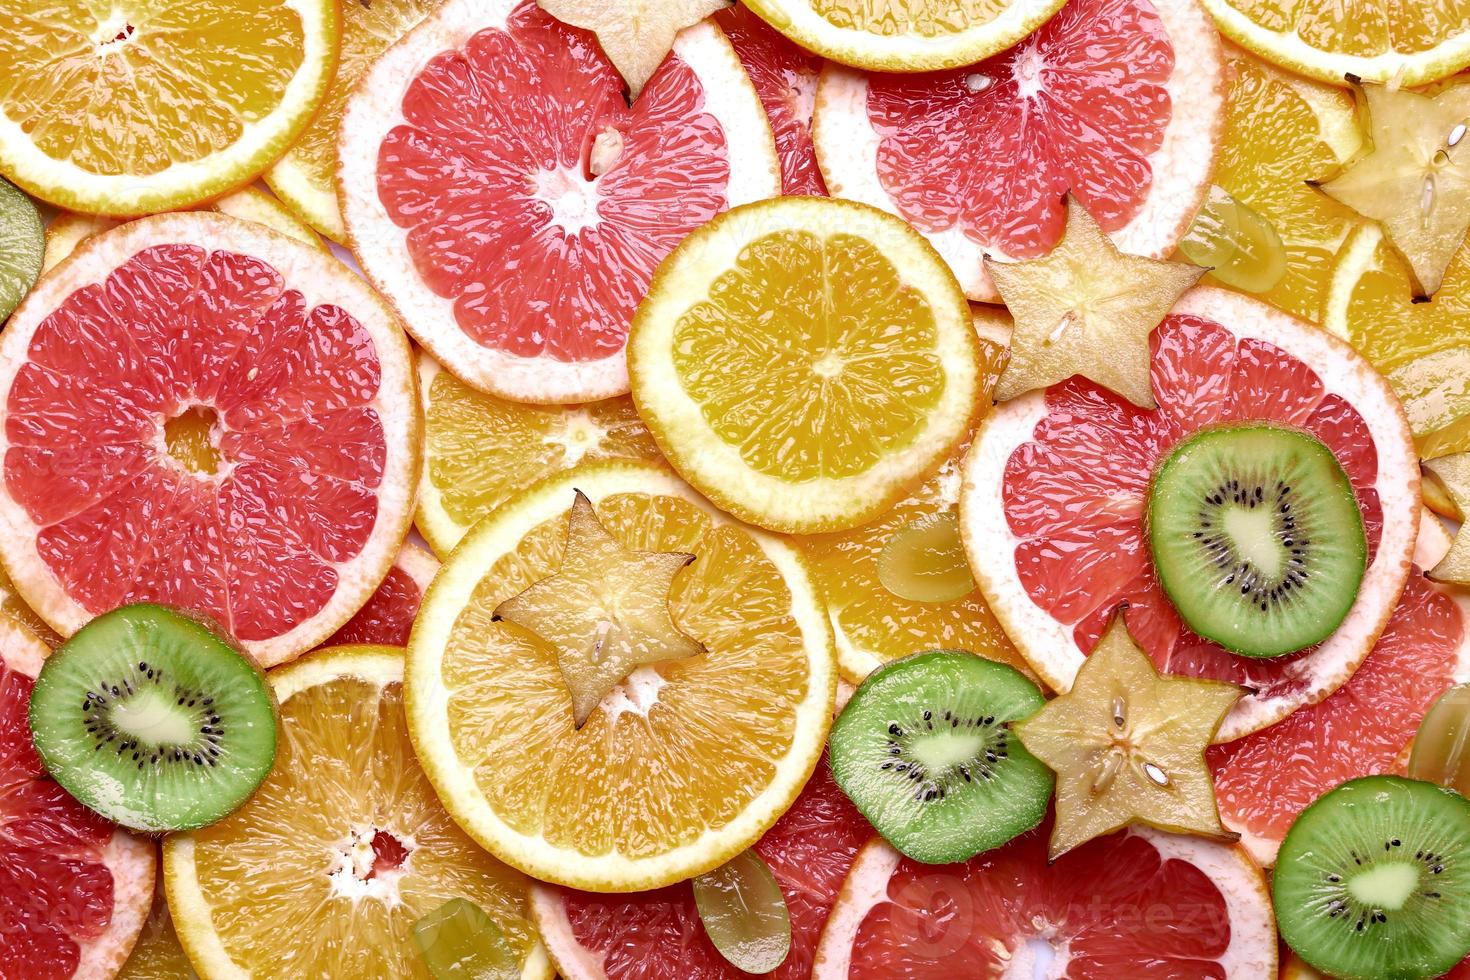 sinaasappel en aardbei en bessen fruit creatieve achtergrond tropisch vers fruit kleurrijk gezond foto